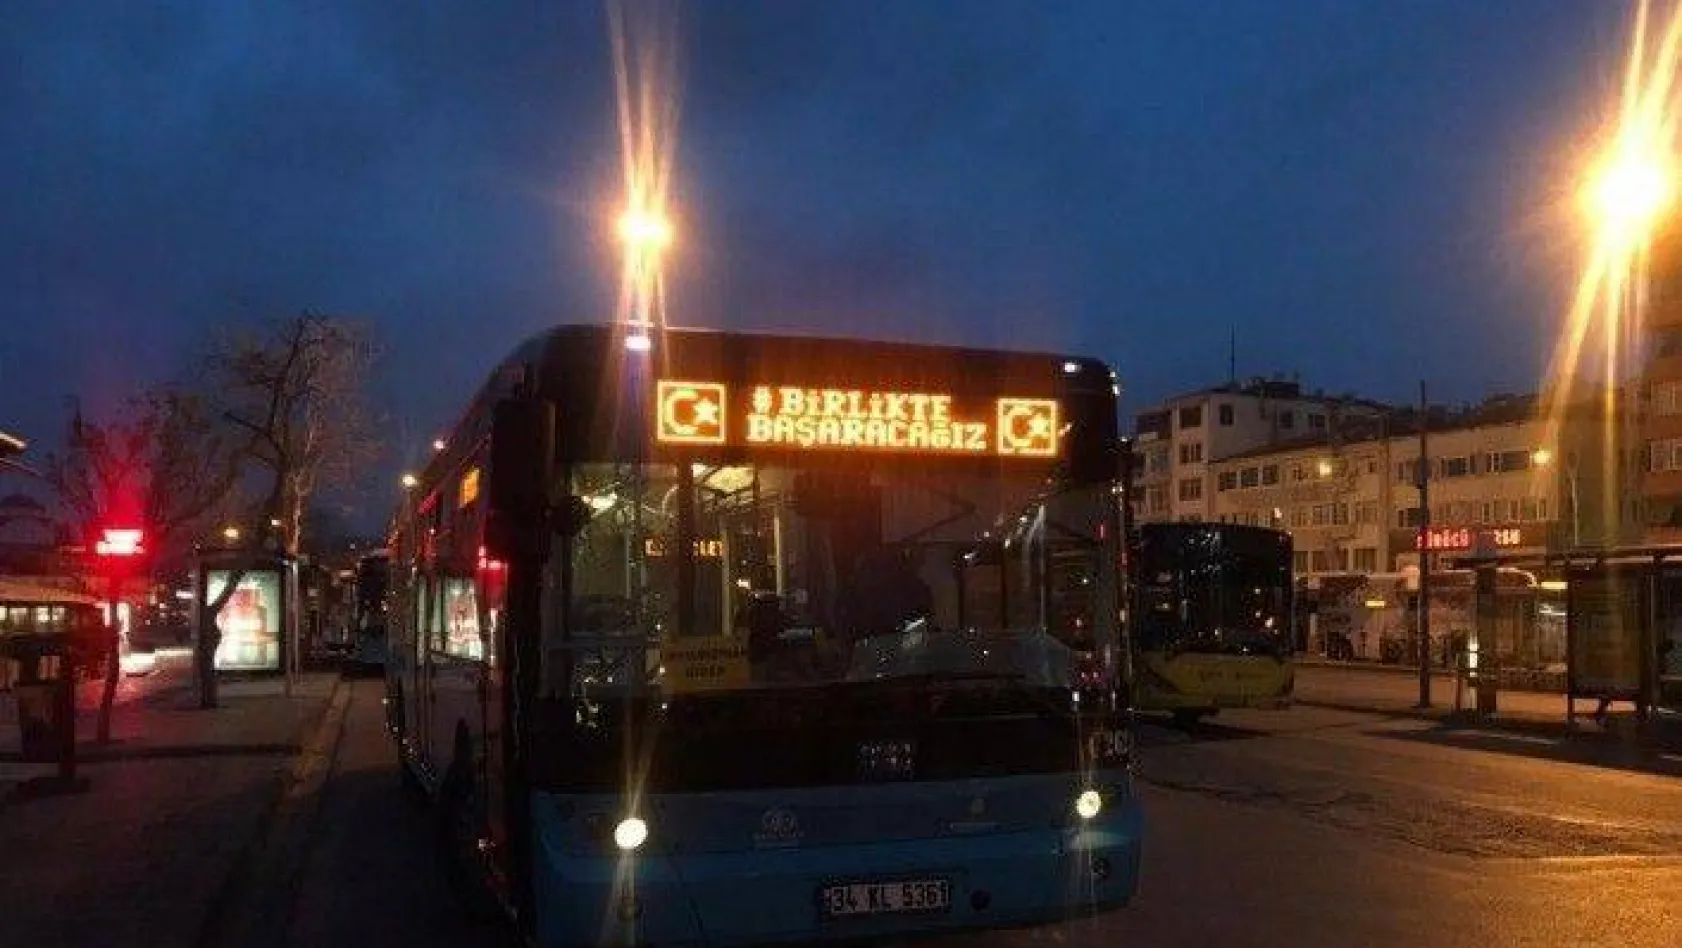 (Özel) İstanbul'da İETT ve Özel halk otobüslerine korona virüse karşı " Birlikte Başaracağız" yazıları asıldı